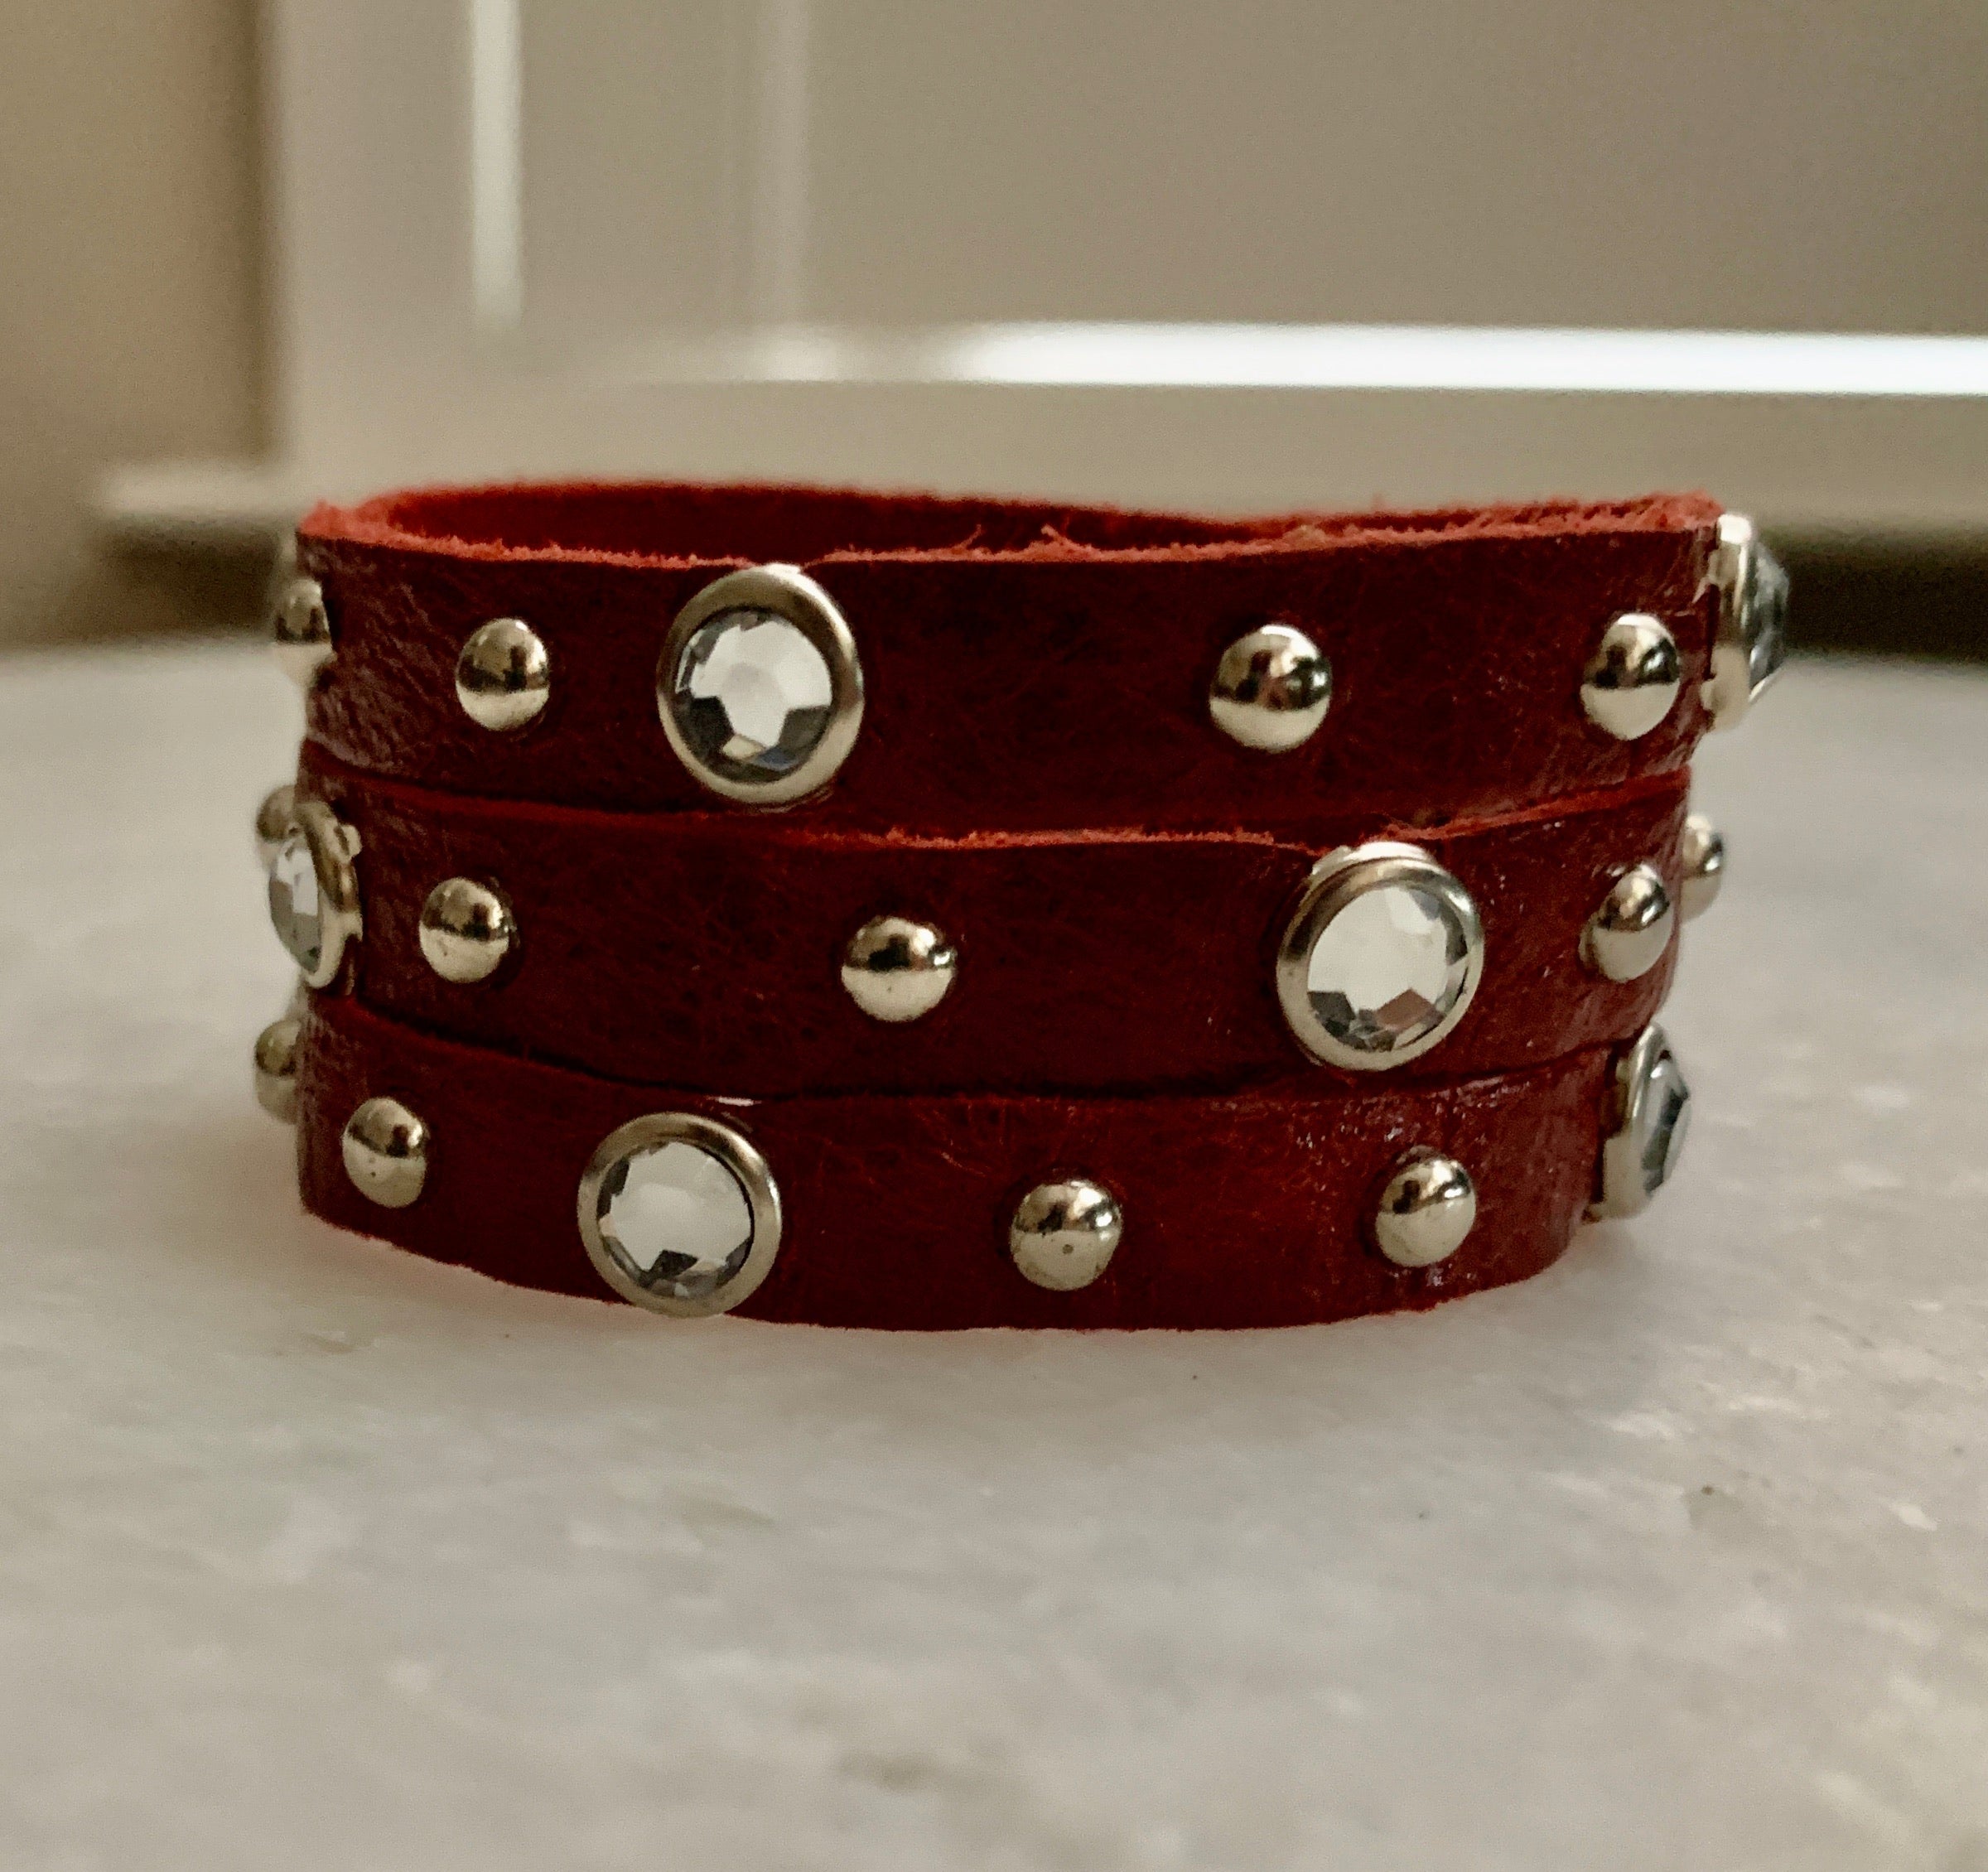 Red Cz Studded Leather Bracelet.